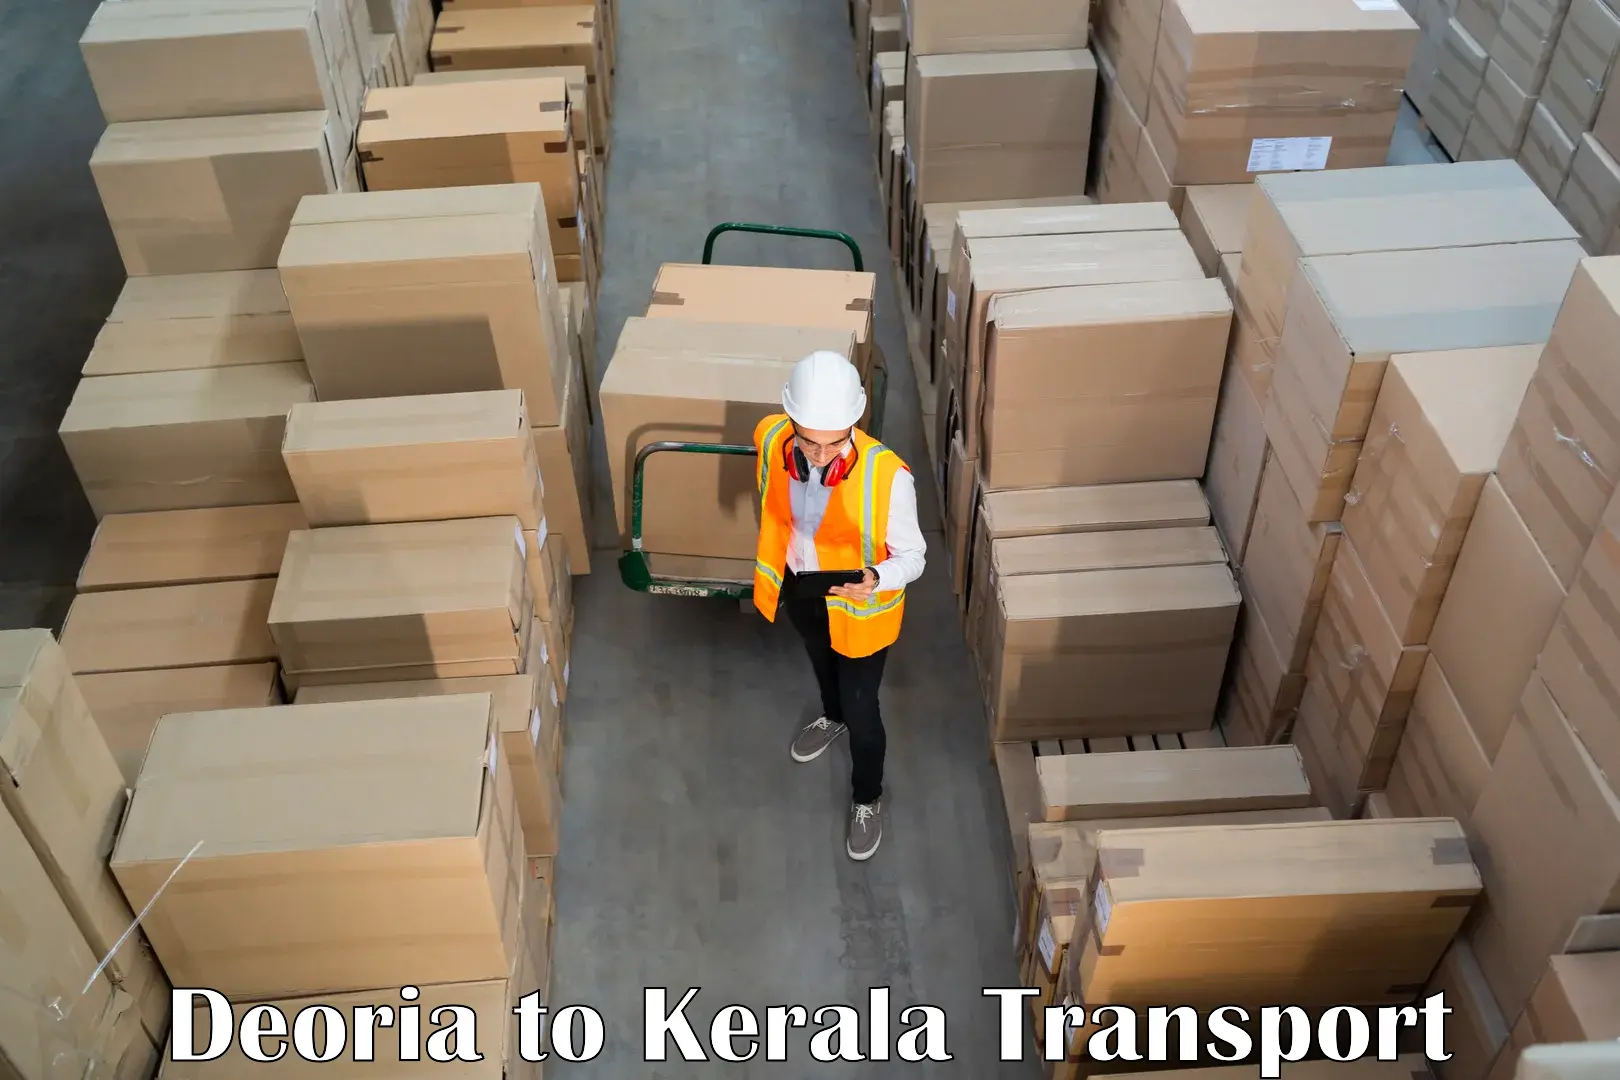 Delivery service Deoria to Muvattupuzha